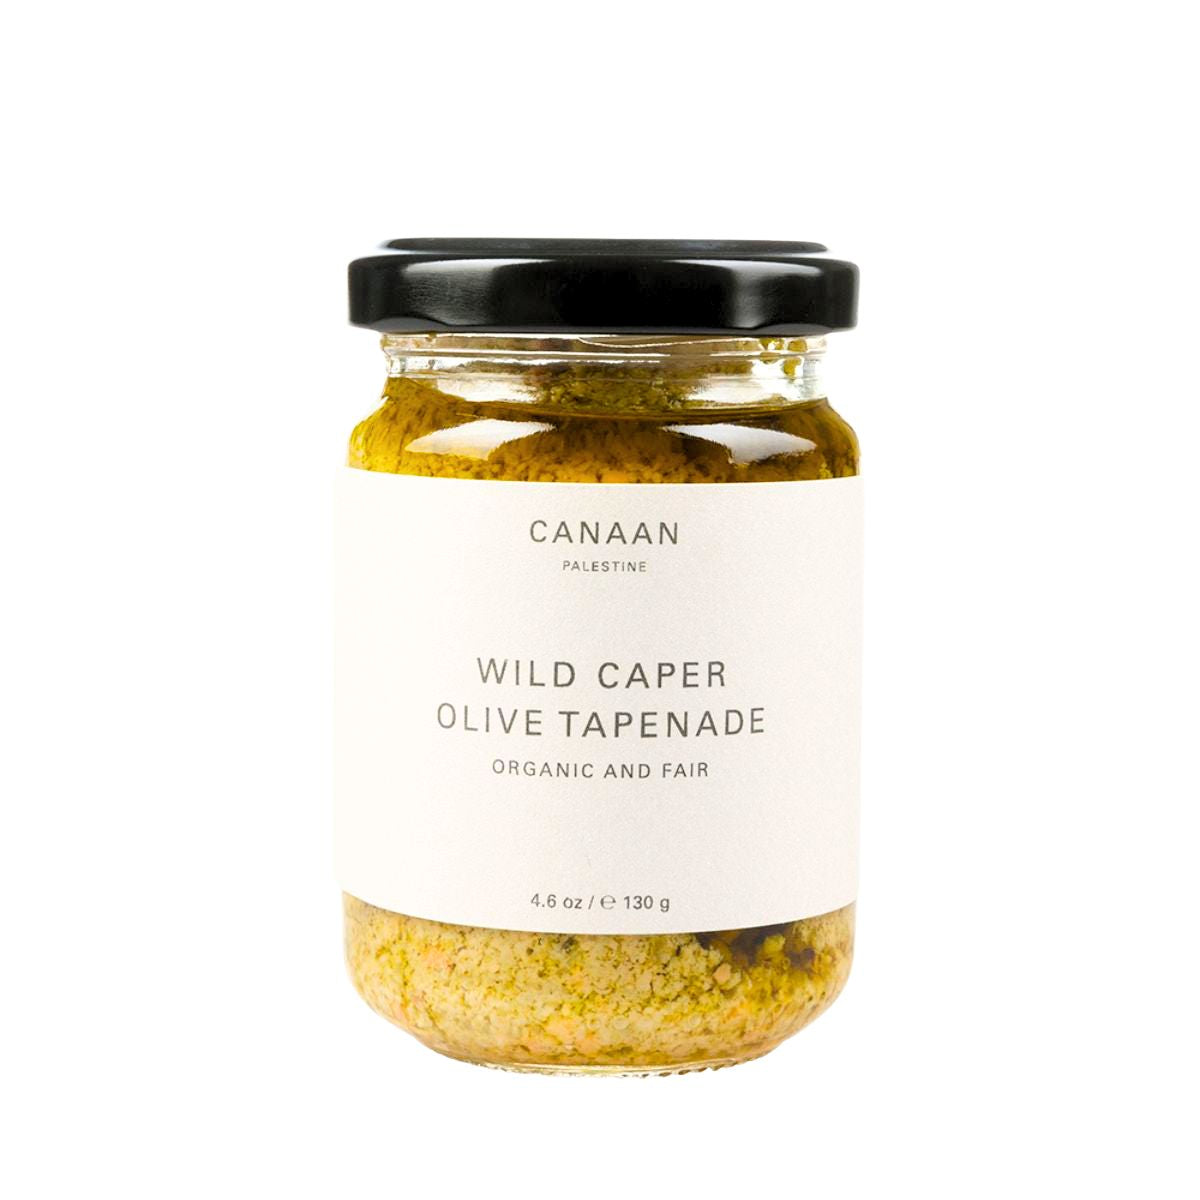 Wild Caper Olive Tapenade